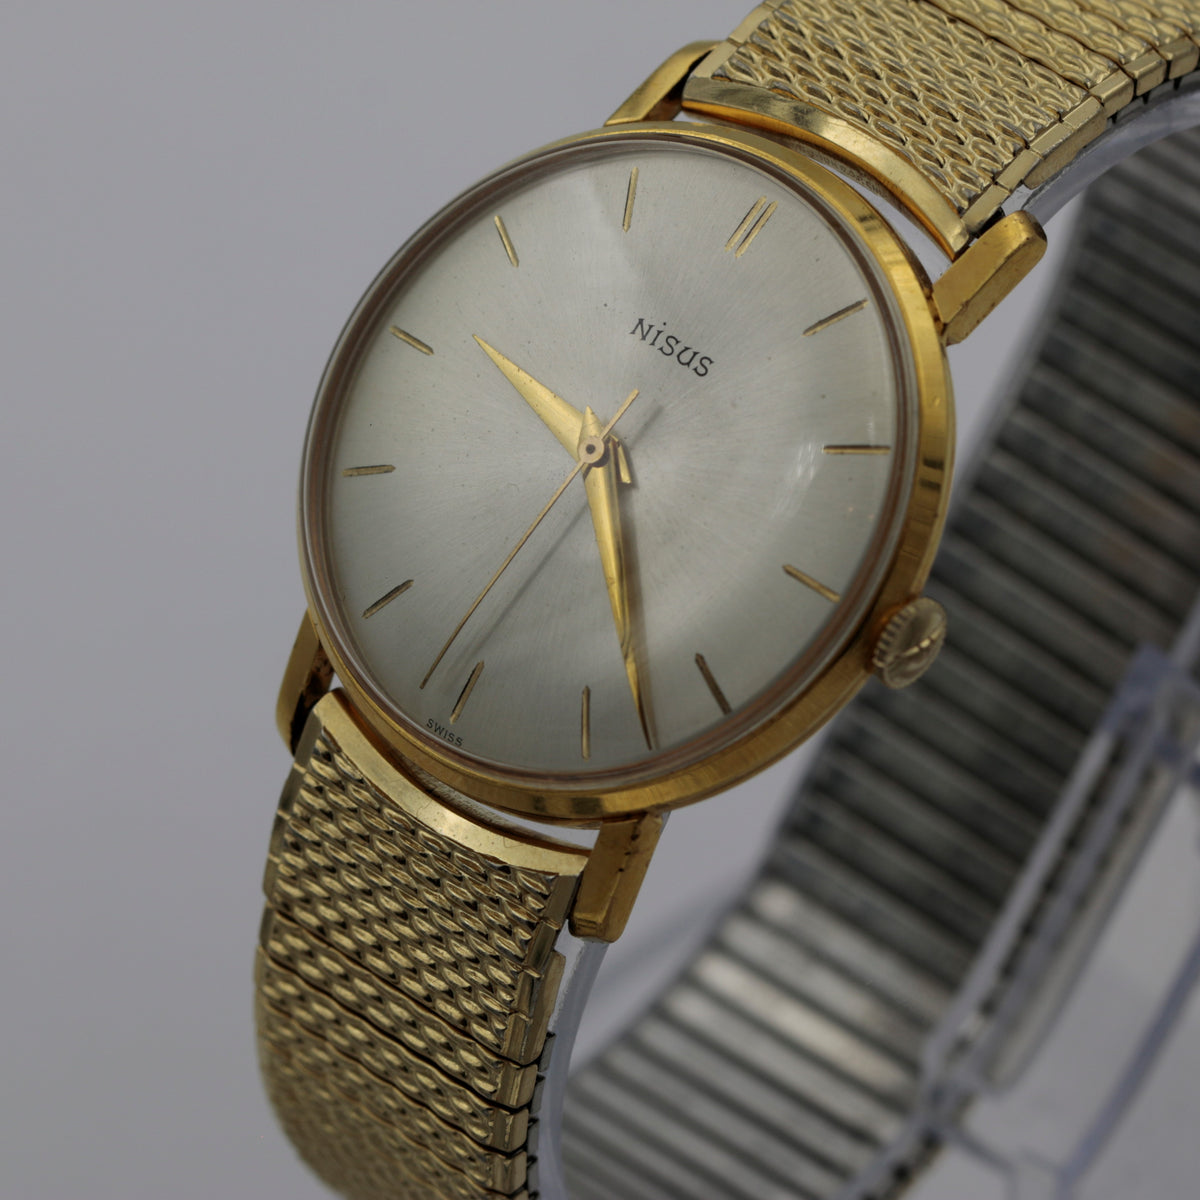 Nisus Swiss Made Mechanical Wrist Watch – Ticktock Guru